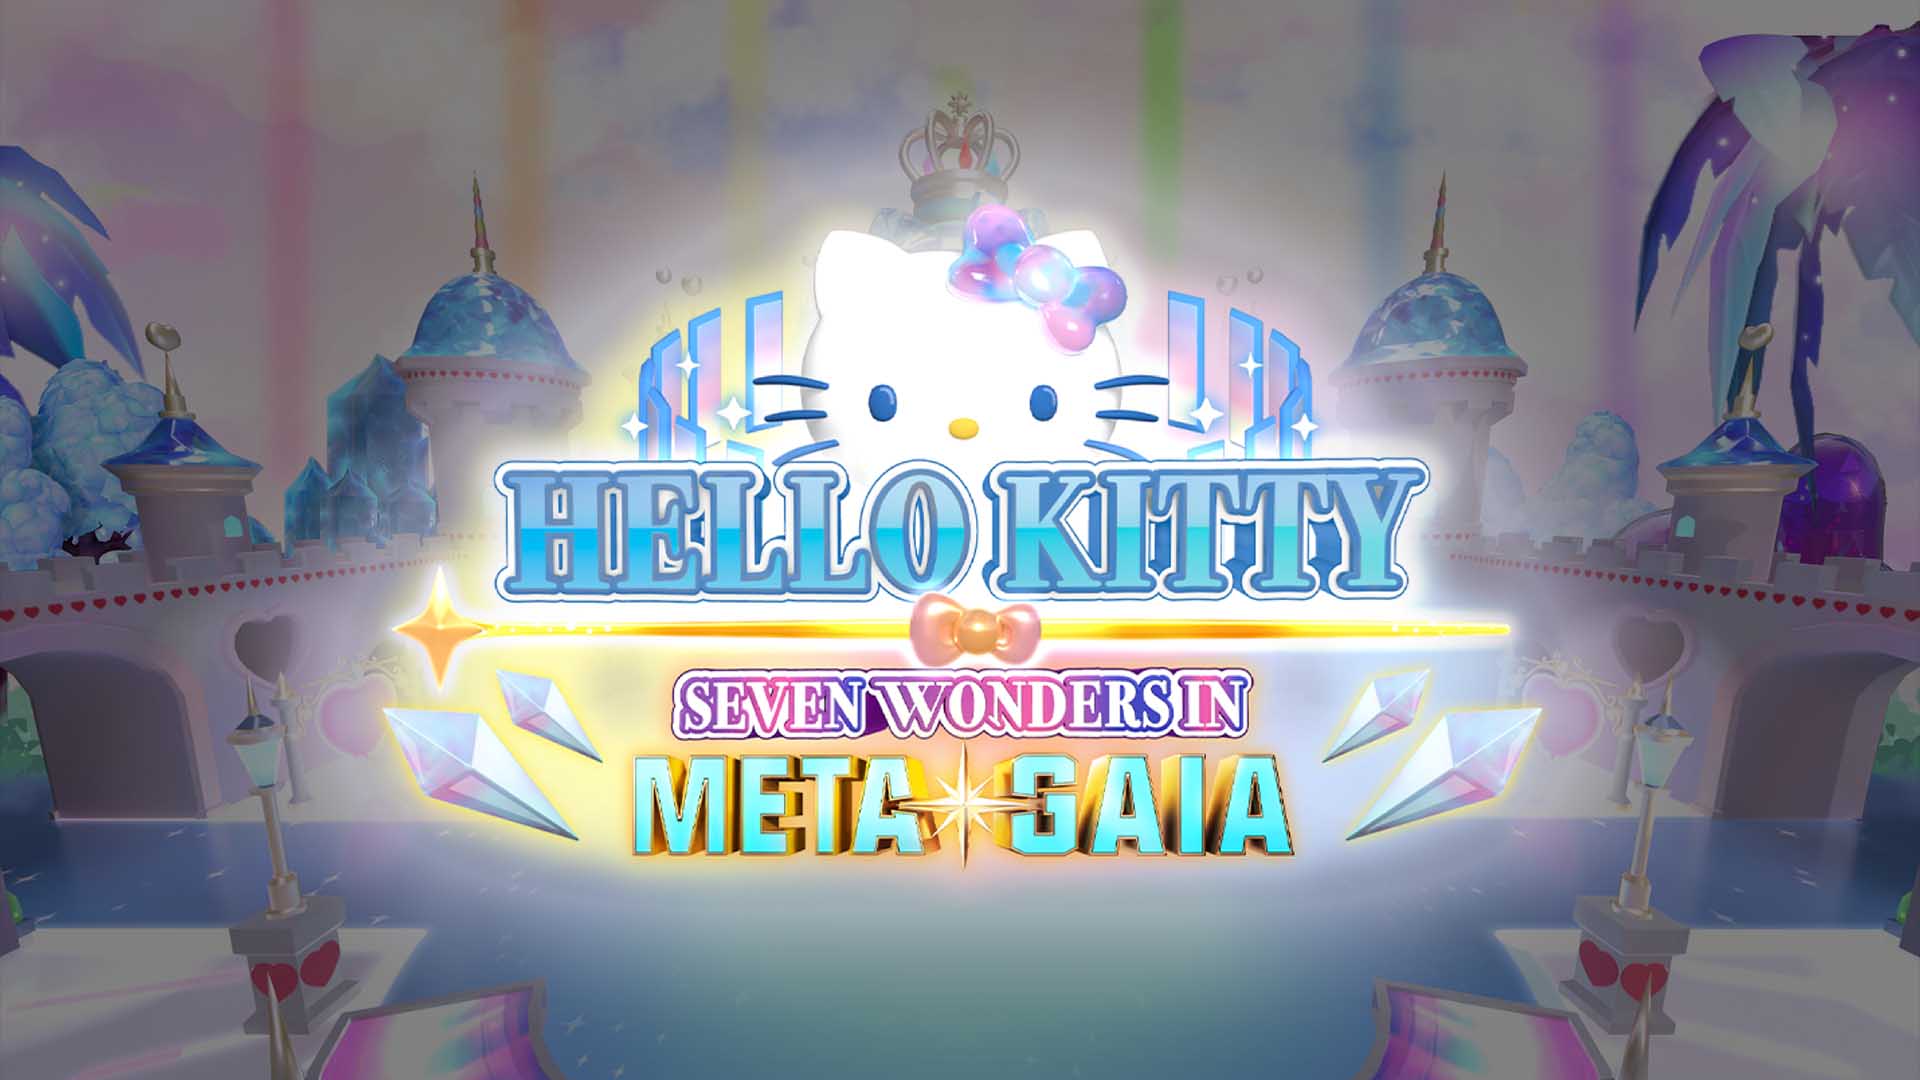 Nova' Hello Kitty quer conquistar o metaverso